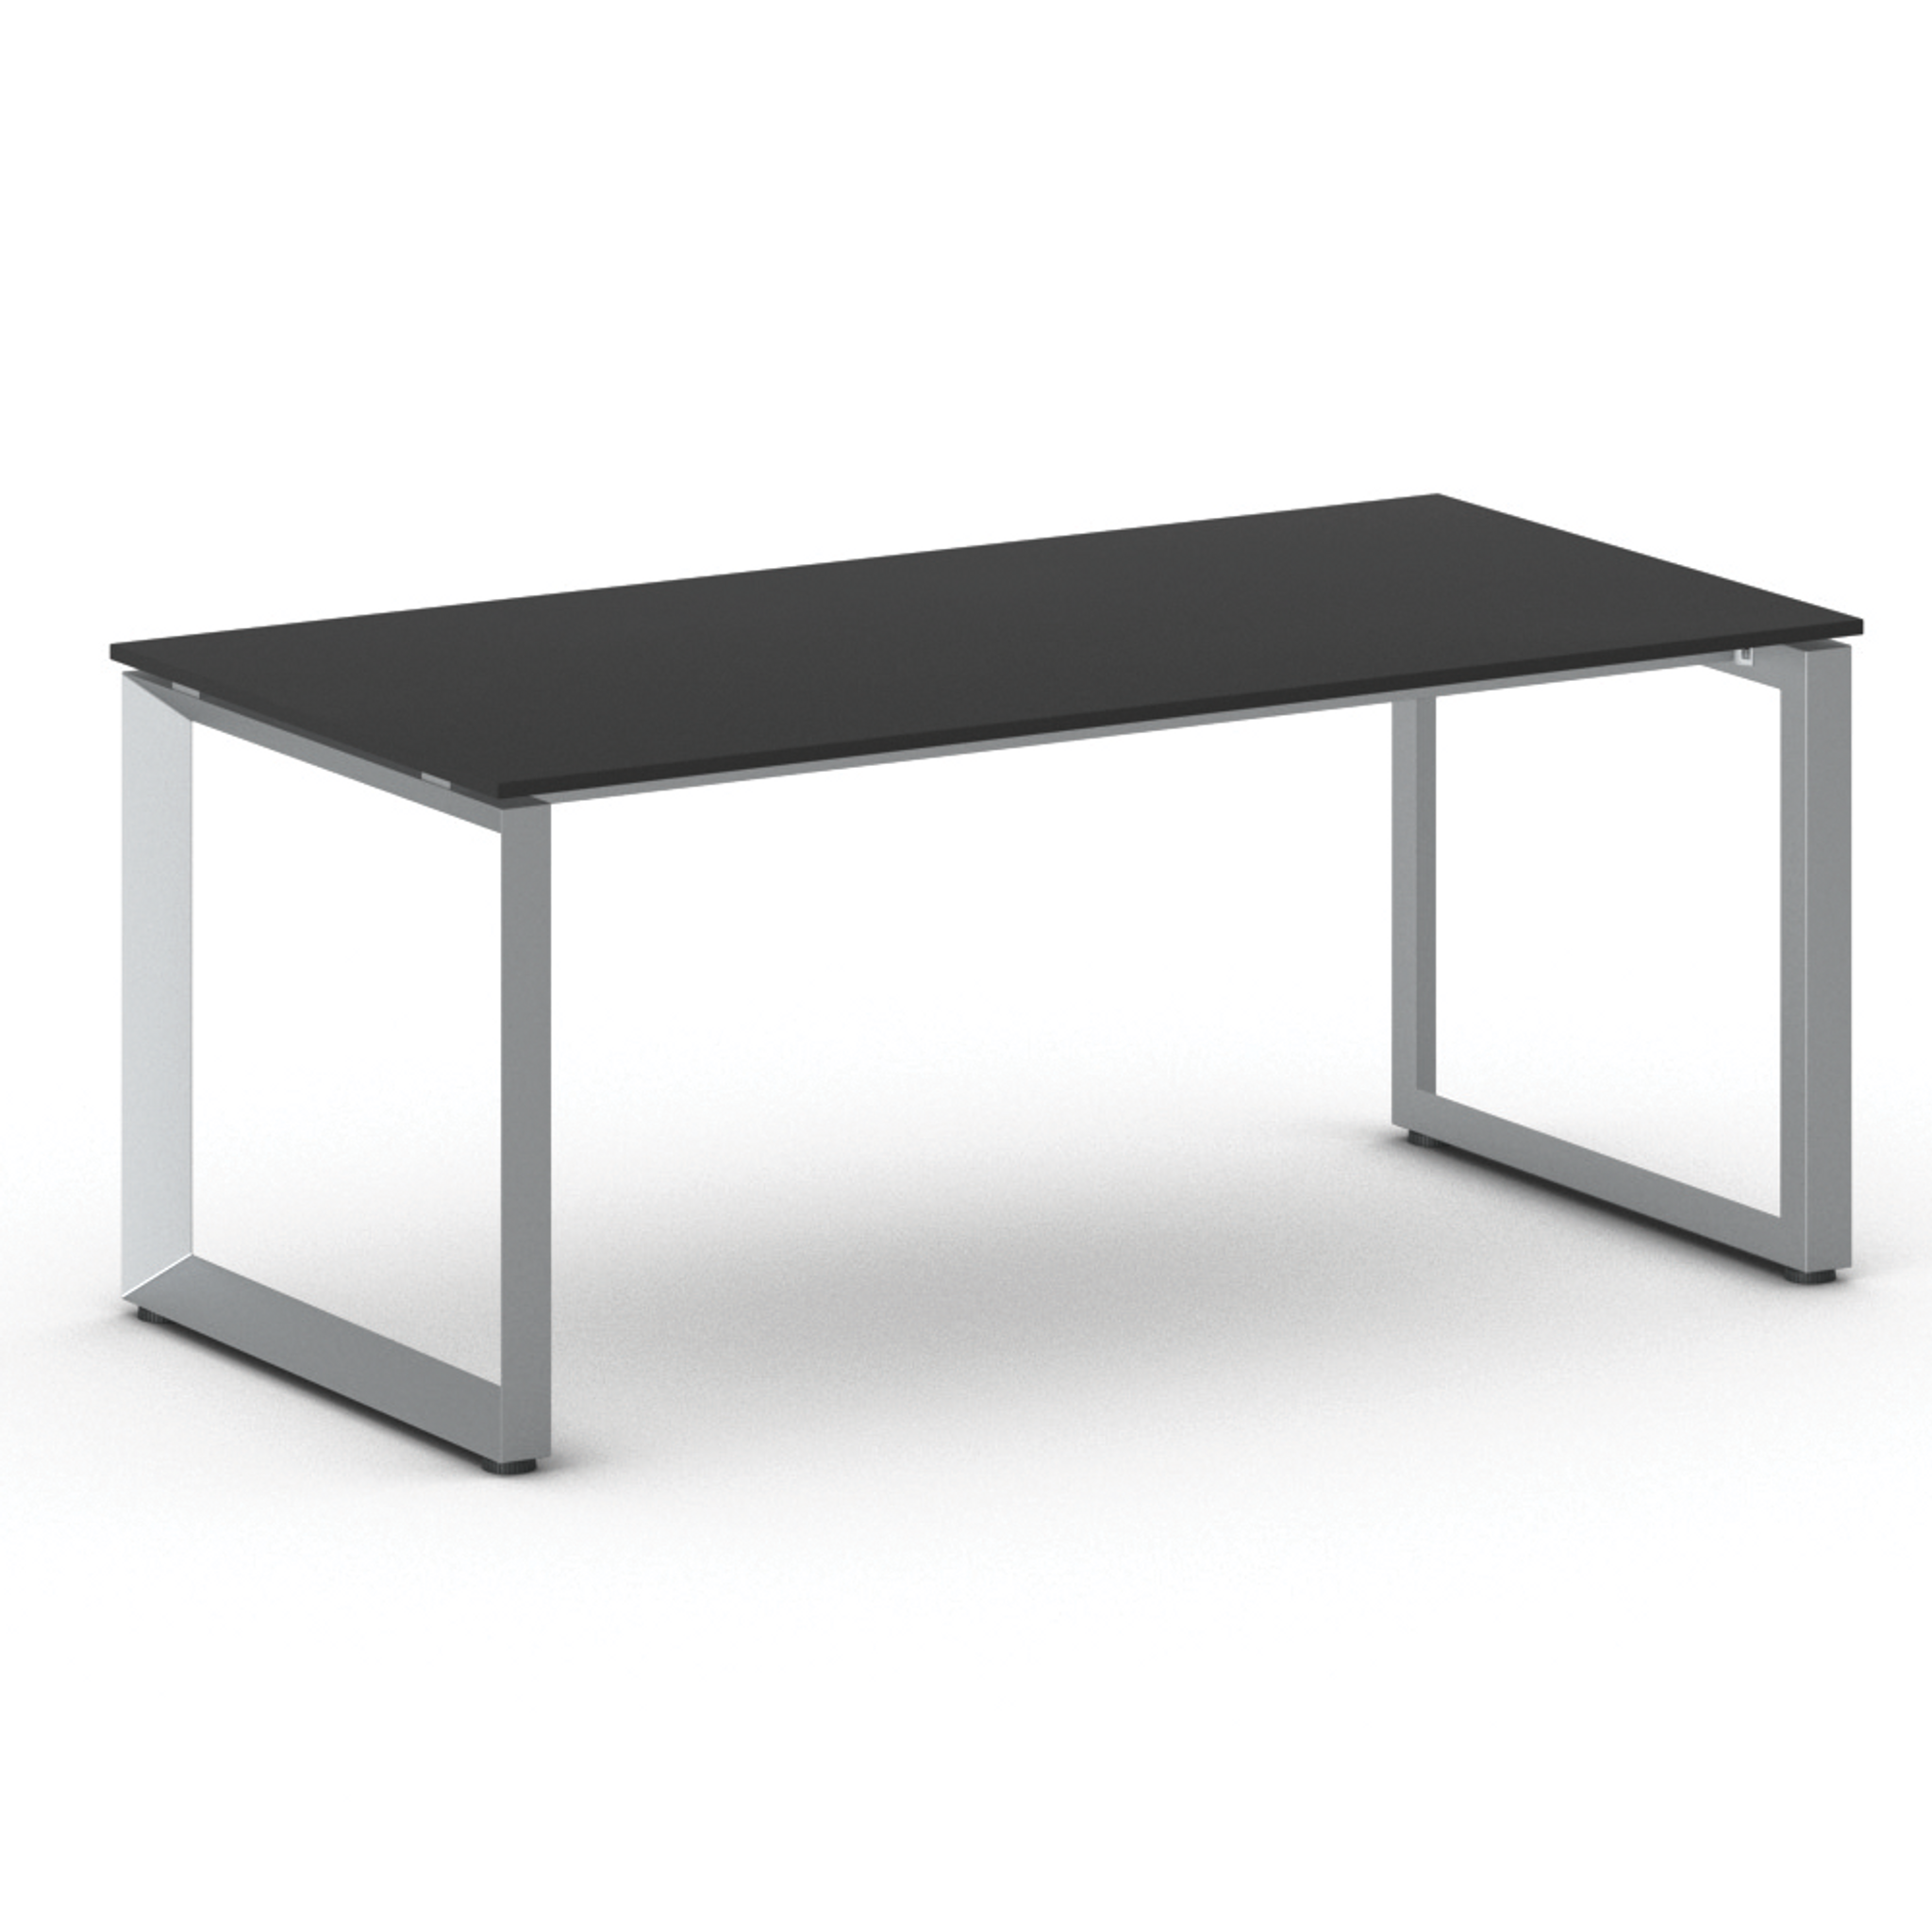 Kancelářský stůl PRIMO INSPIRE, šedostříbrná podnož, 1800 x 900 mm, grafitová